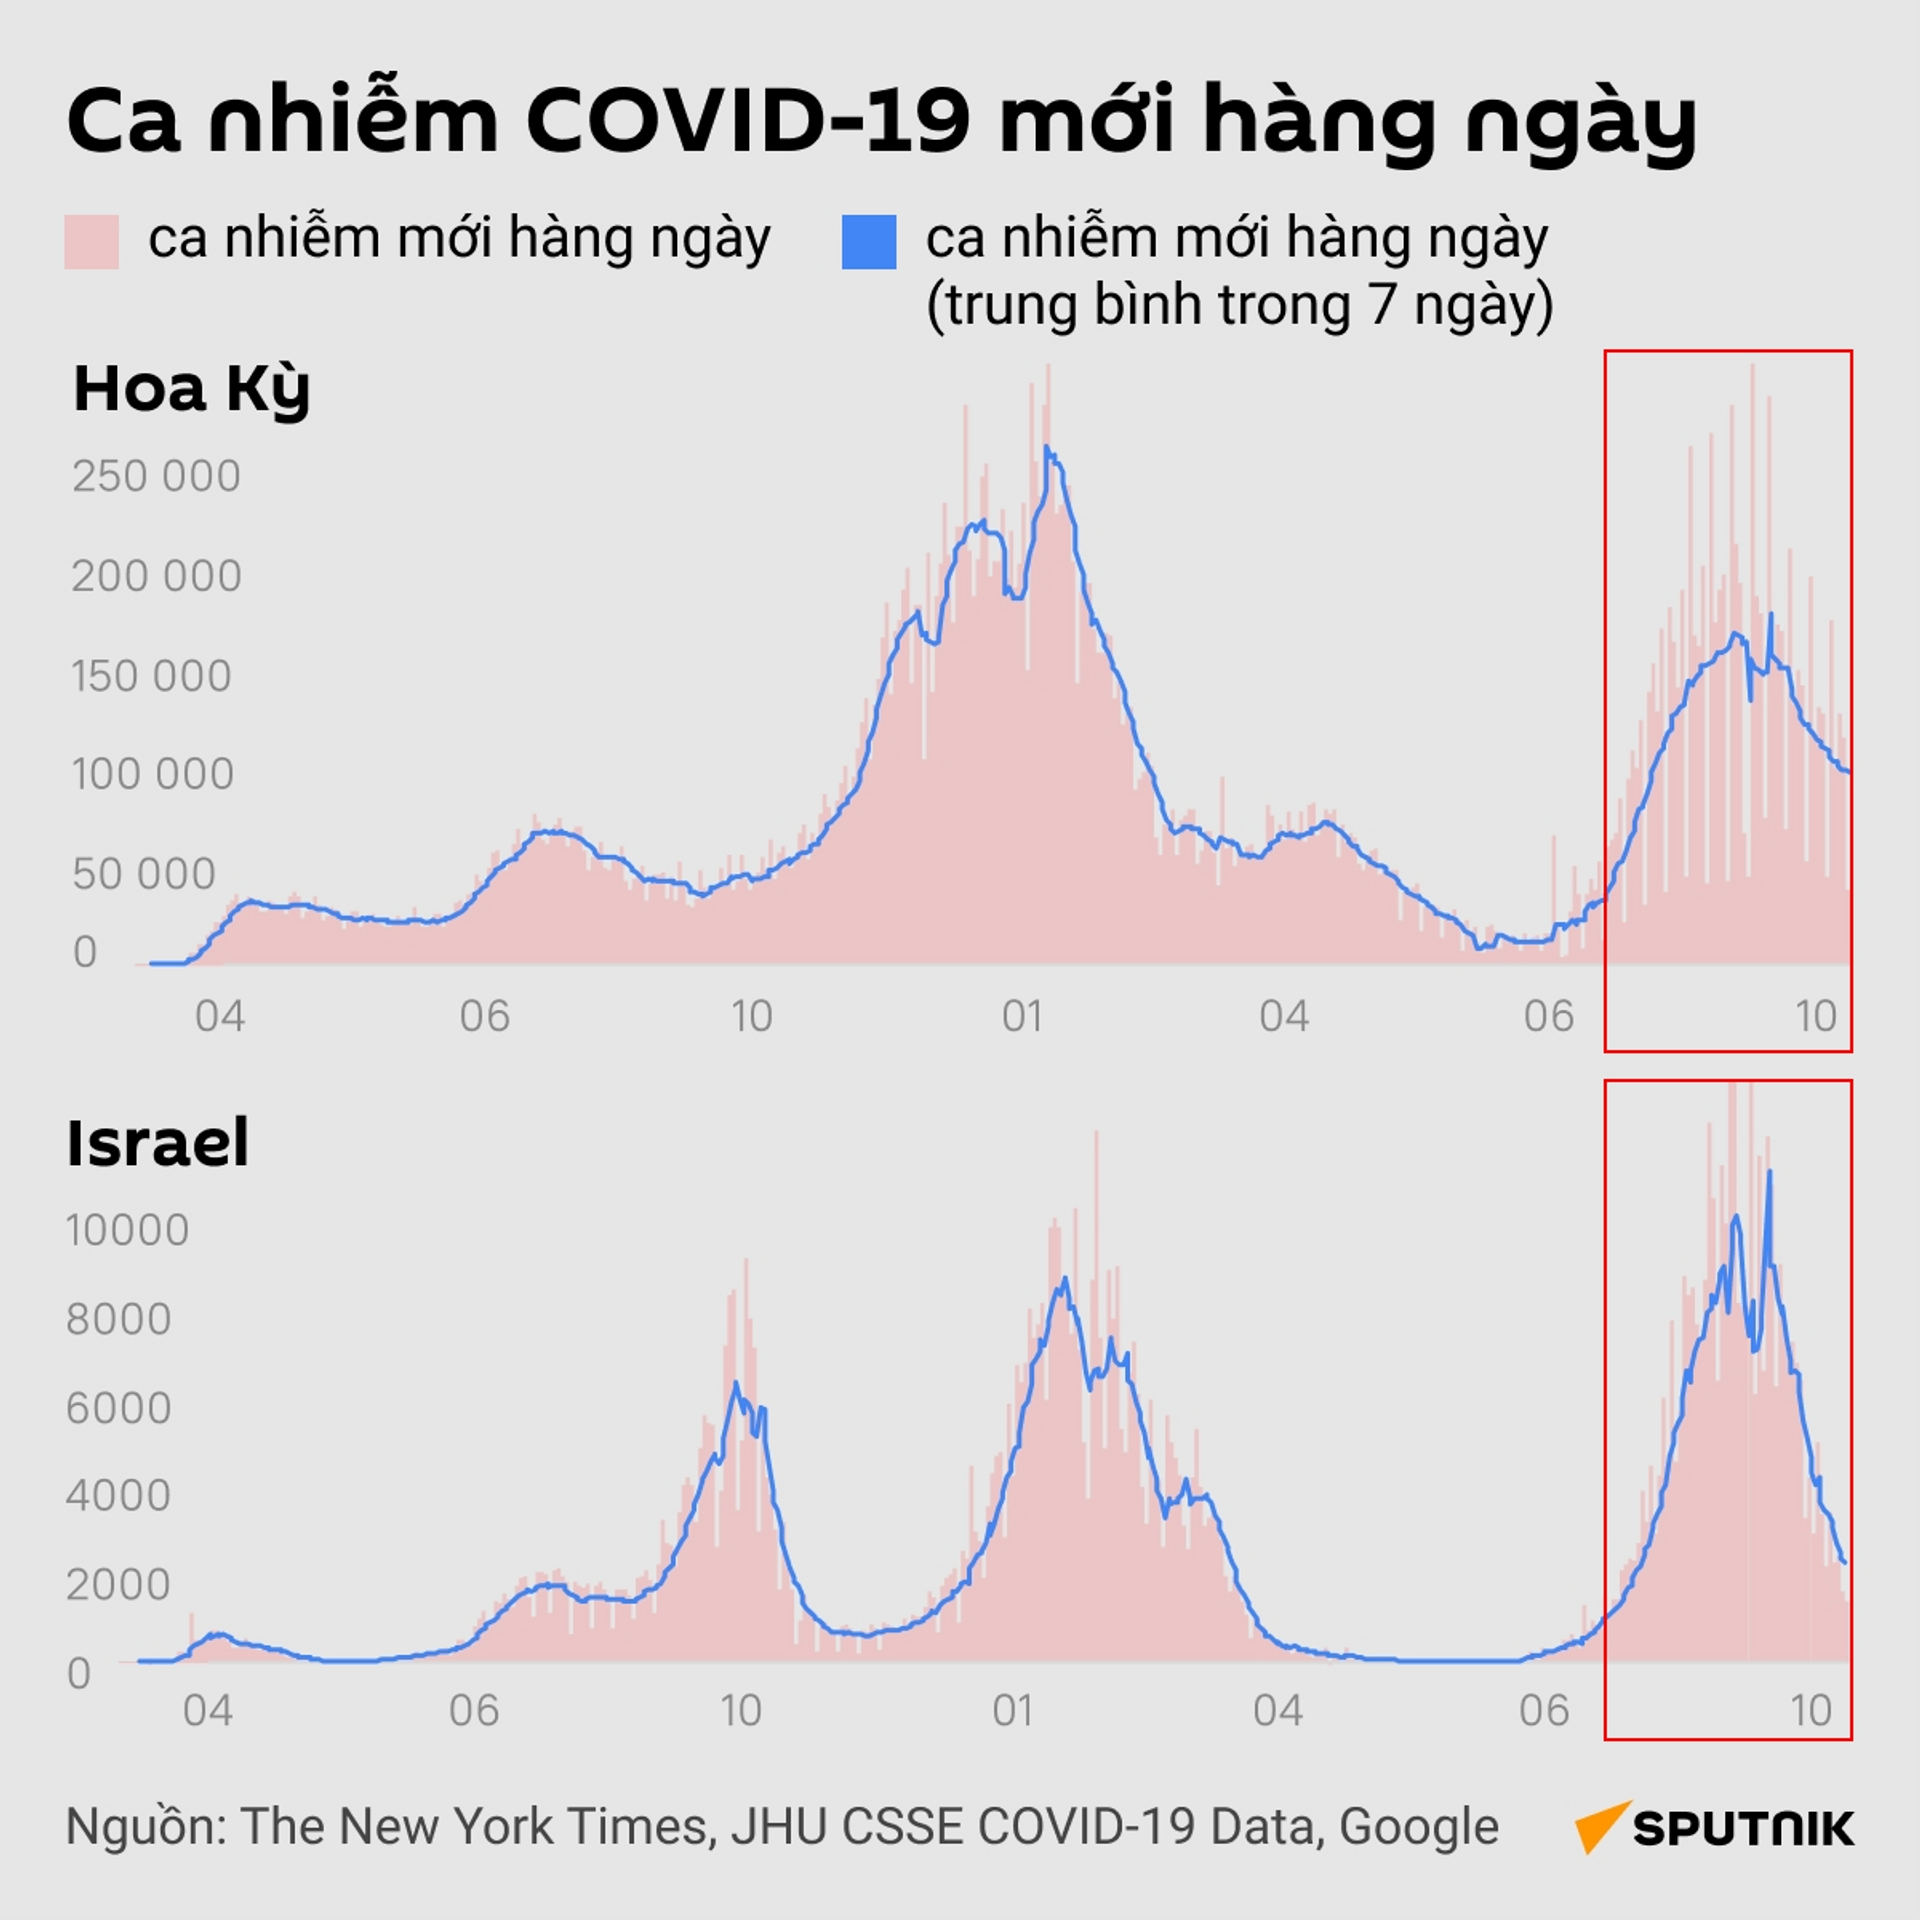 Ca nhiễm COVID-19 mới hàng ngày ở israel và Hoa Kỳ - Sputnik Việt Nam, 1920, 13.10.2021